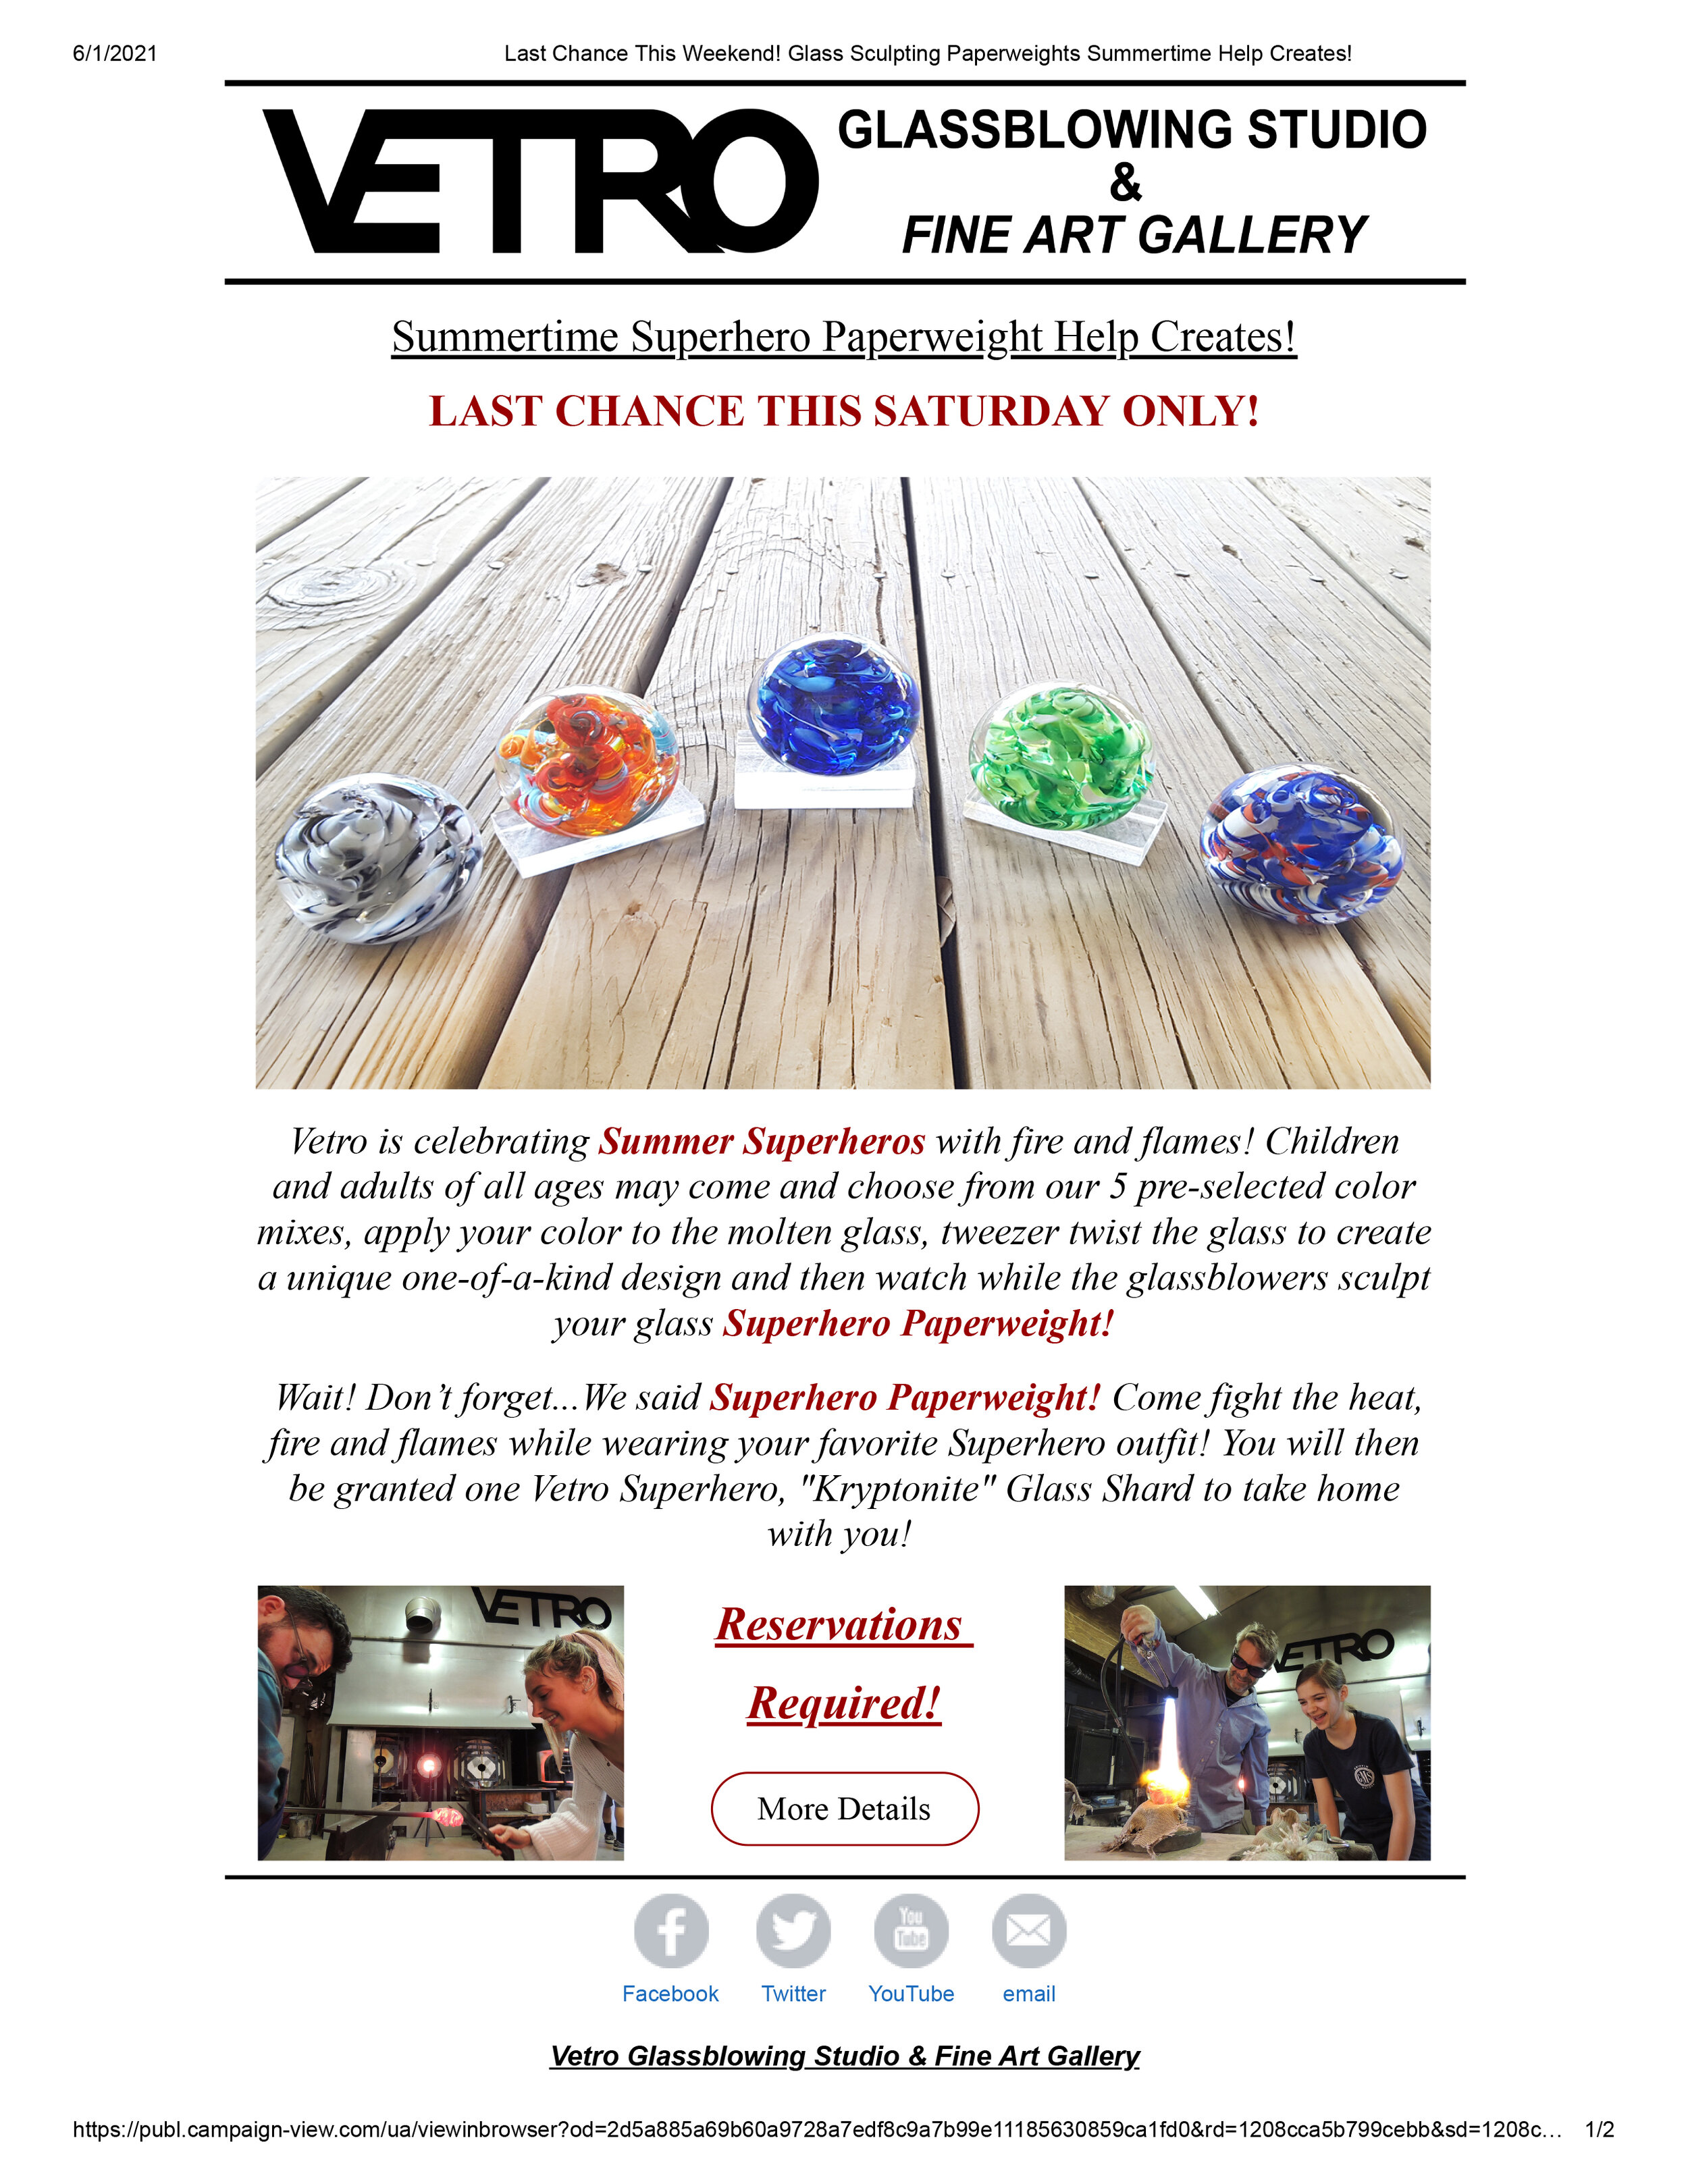 Email Campaigns -Vetro Glassblowing Studio Summertime Superhero Paperweight Help Createspdf-1.jpg